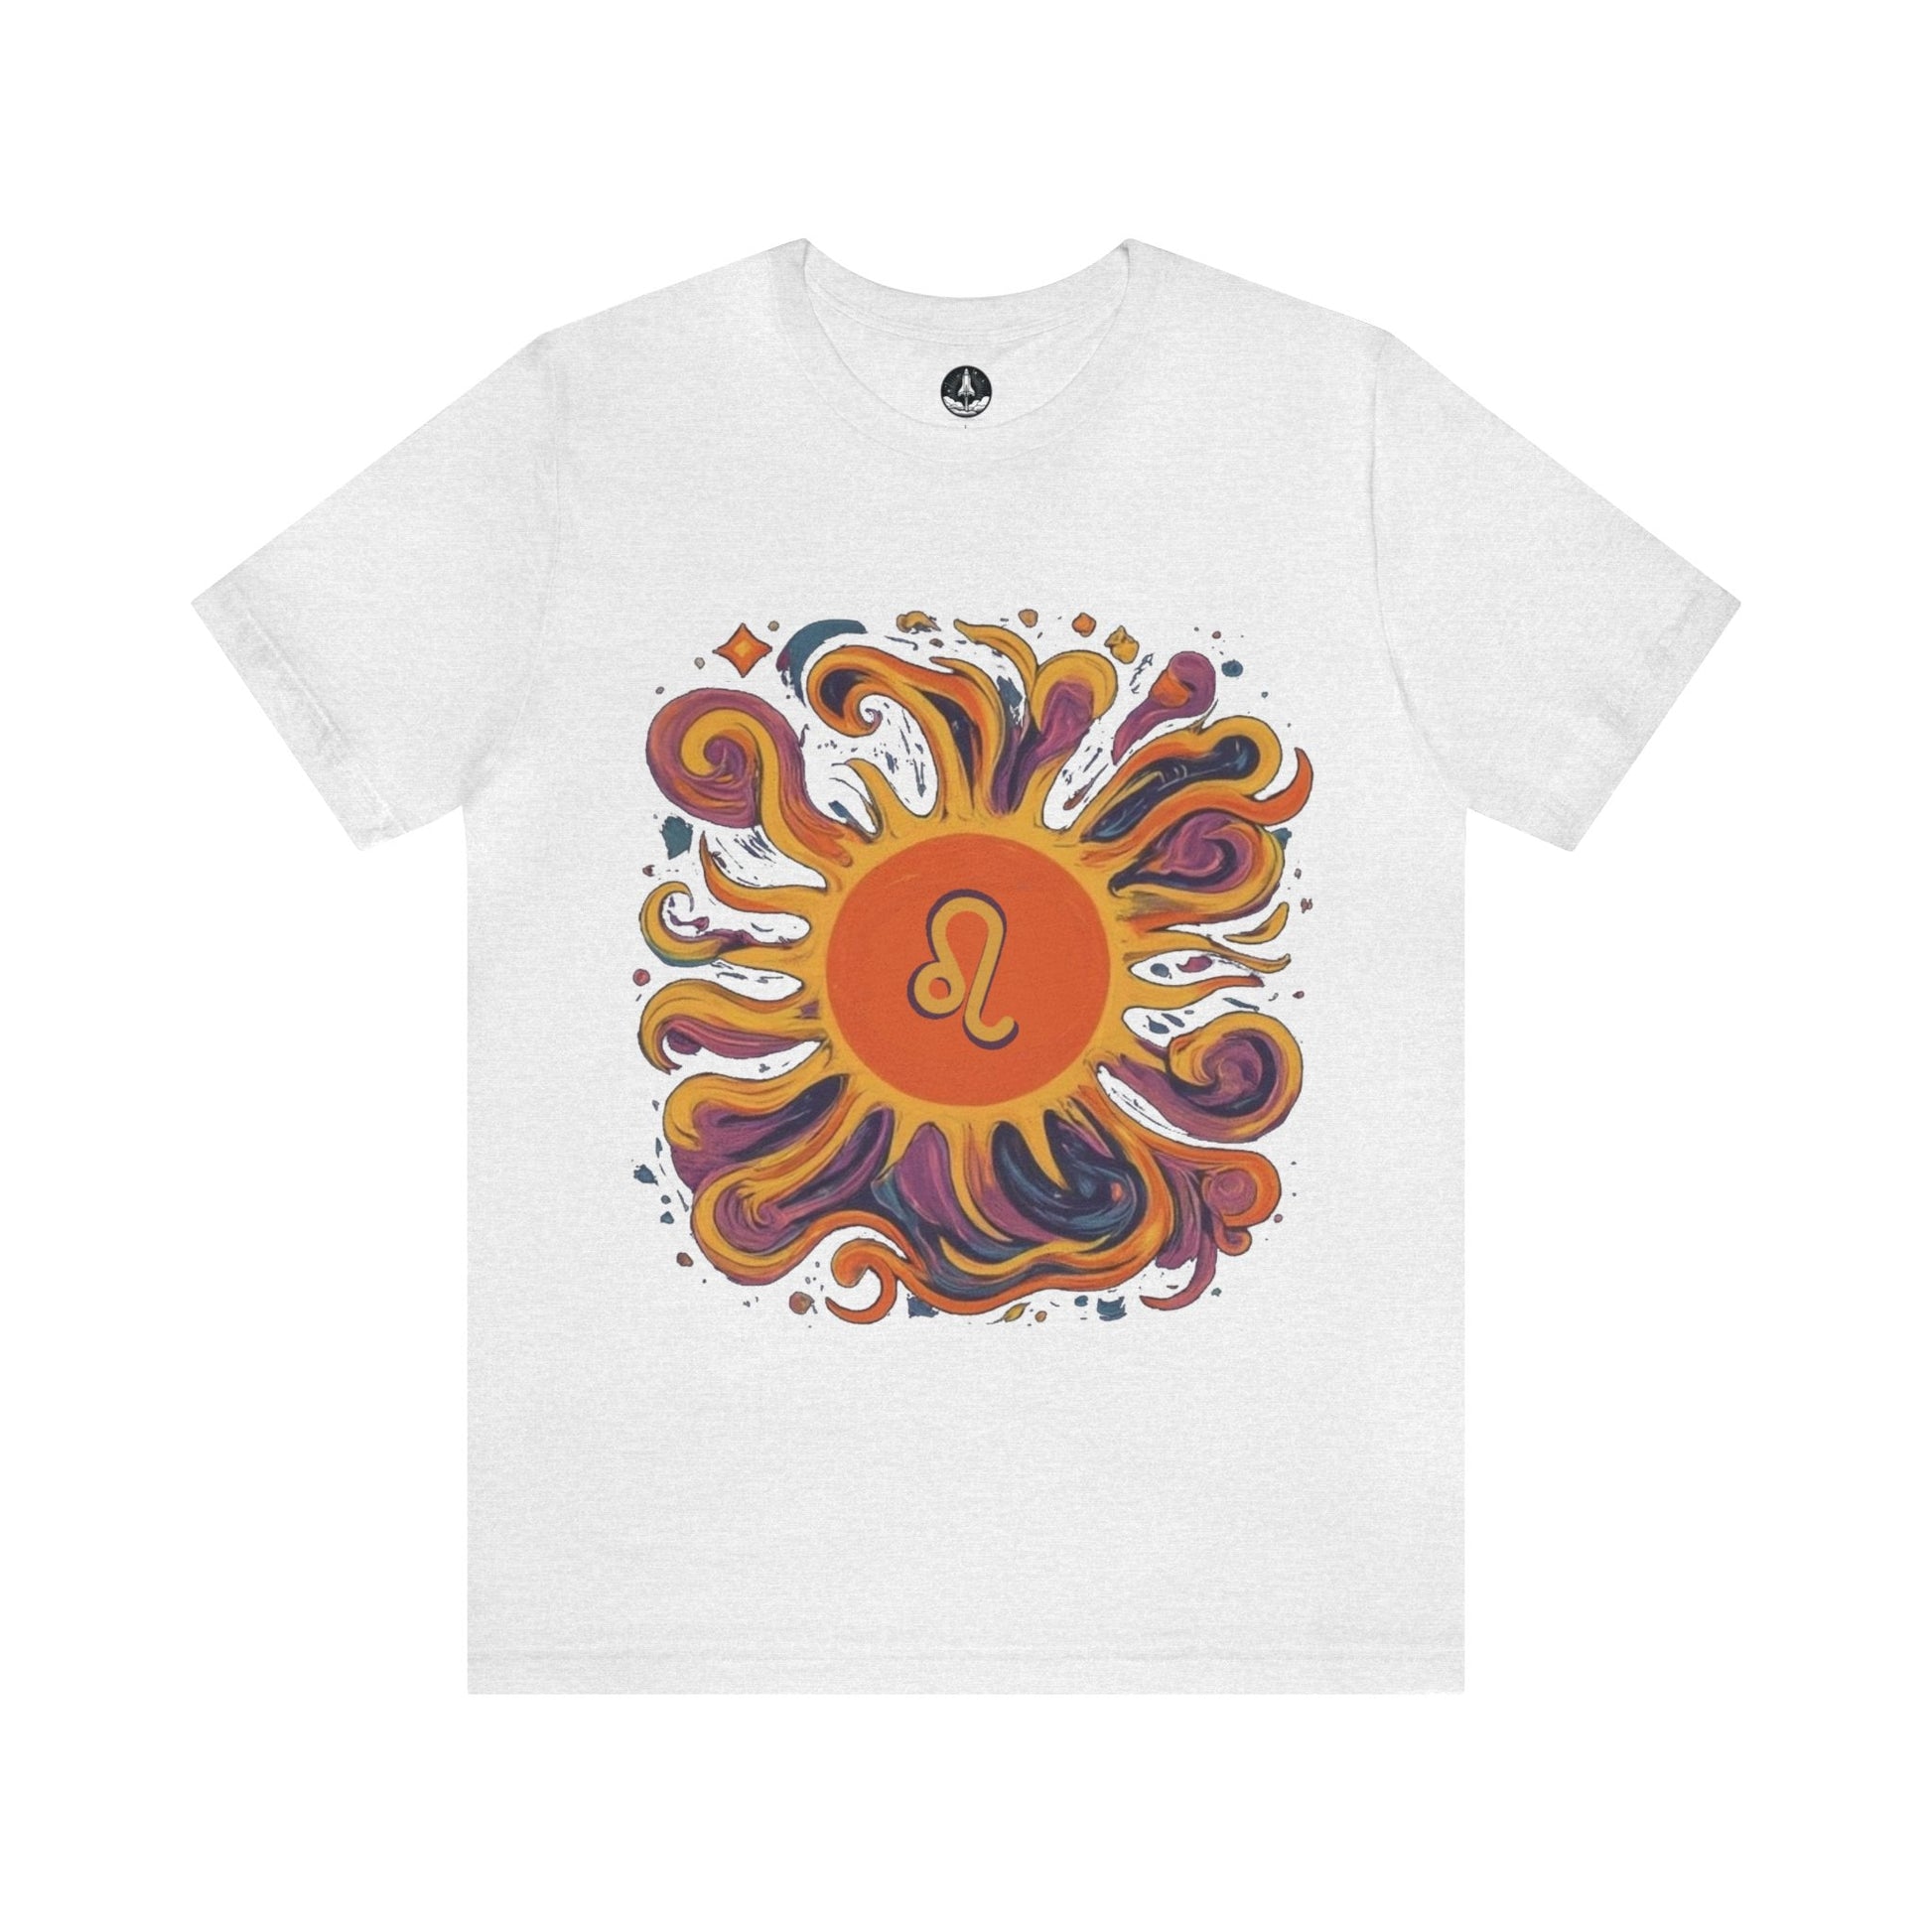 T-Shirt Ash / S Leo Luminous Essence Soft T-Shirt: Shine Like the Sun